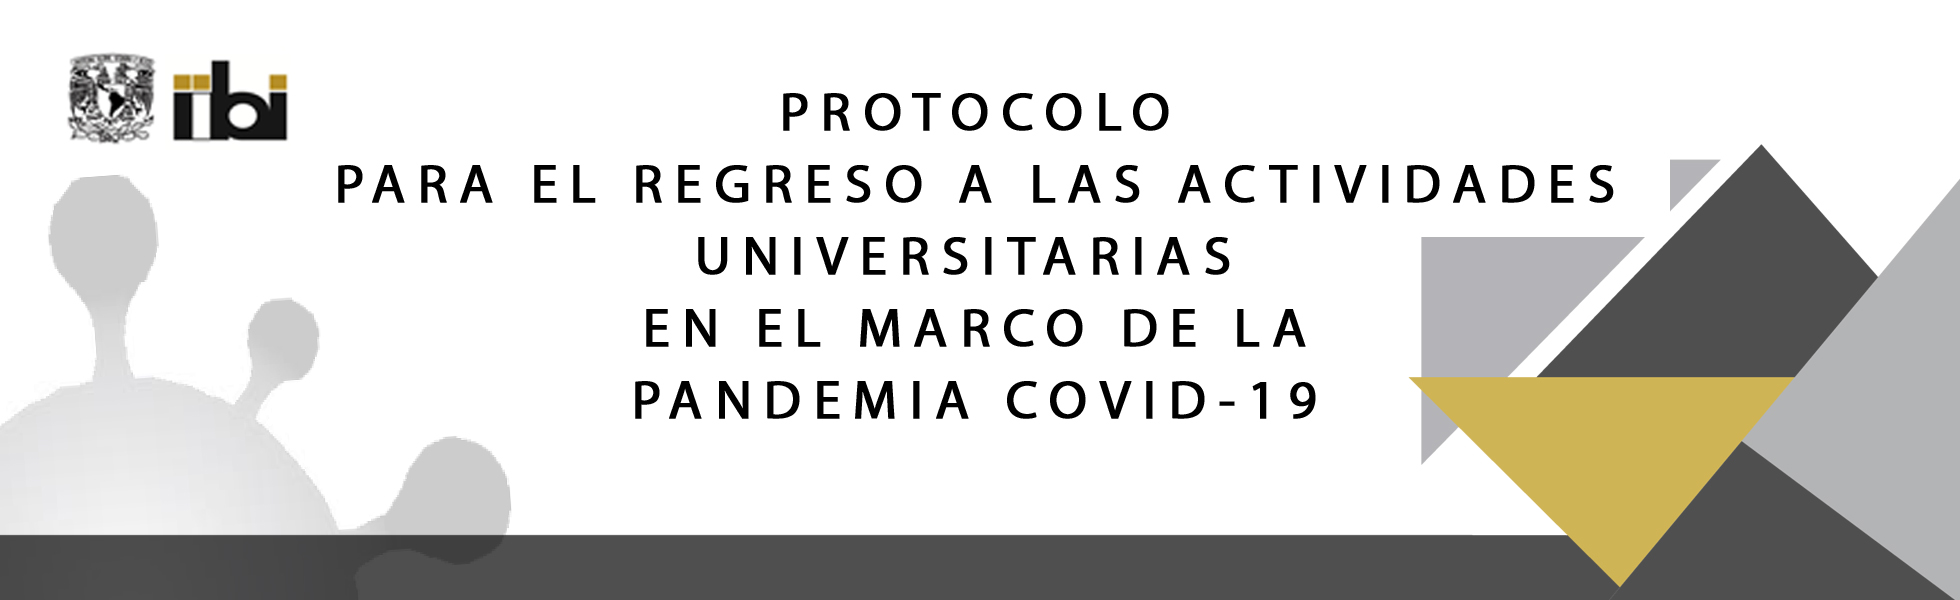 PROTOCOLO PARA EL REGRESO A LAS ACTIVIDADES UNIVERSITARIAS EN EL MARCO DE LA PANDEMIA COVID-19